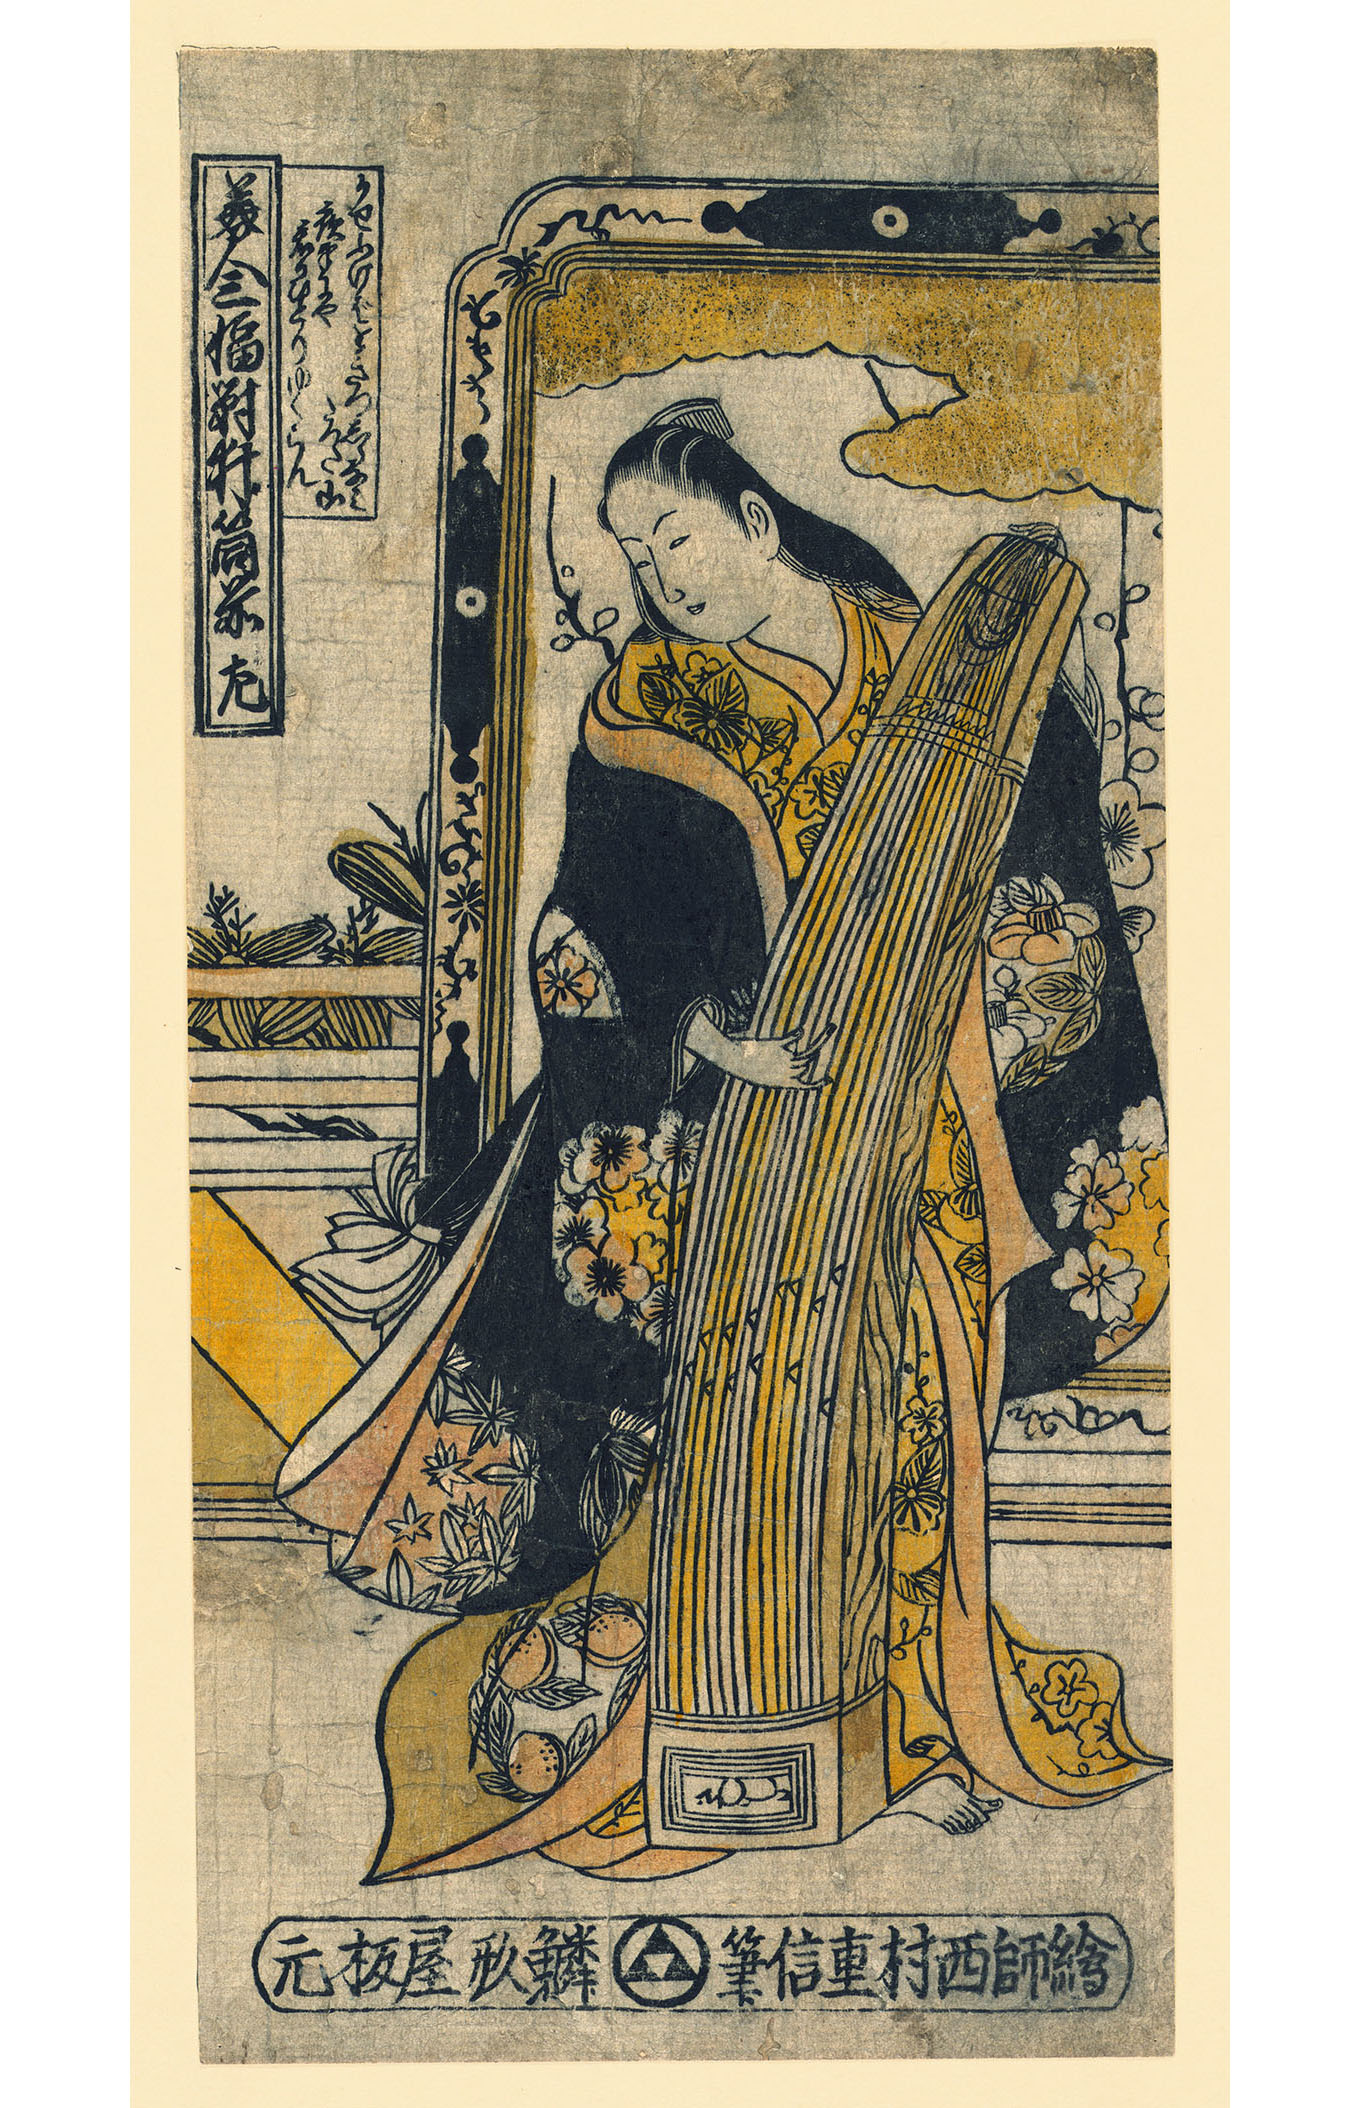 Нисимура Сигэнага. "Гейша стоя играет на цитре". Между 1726-1736.